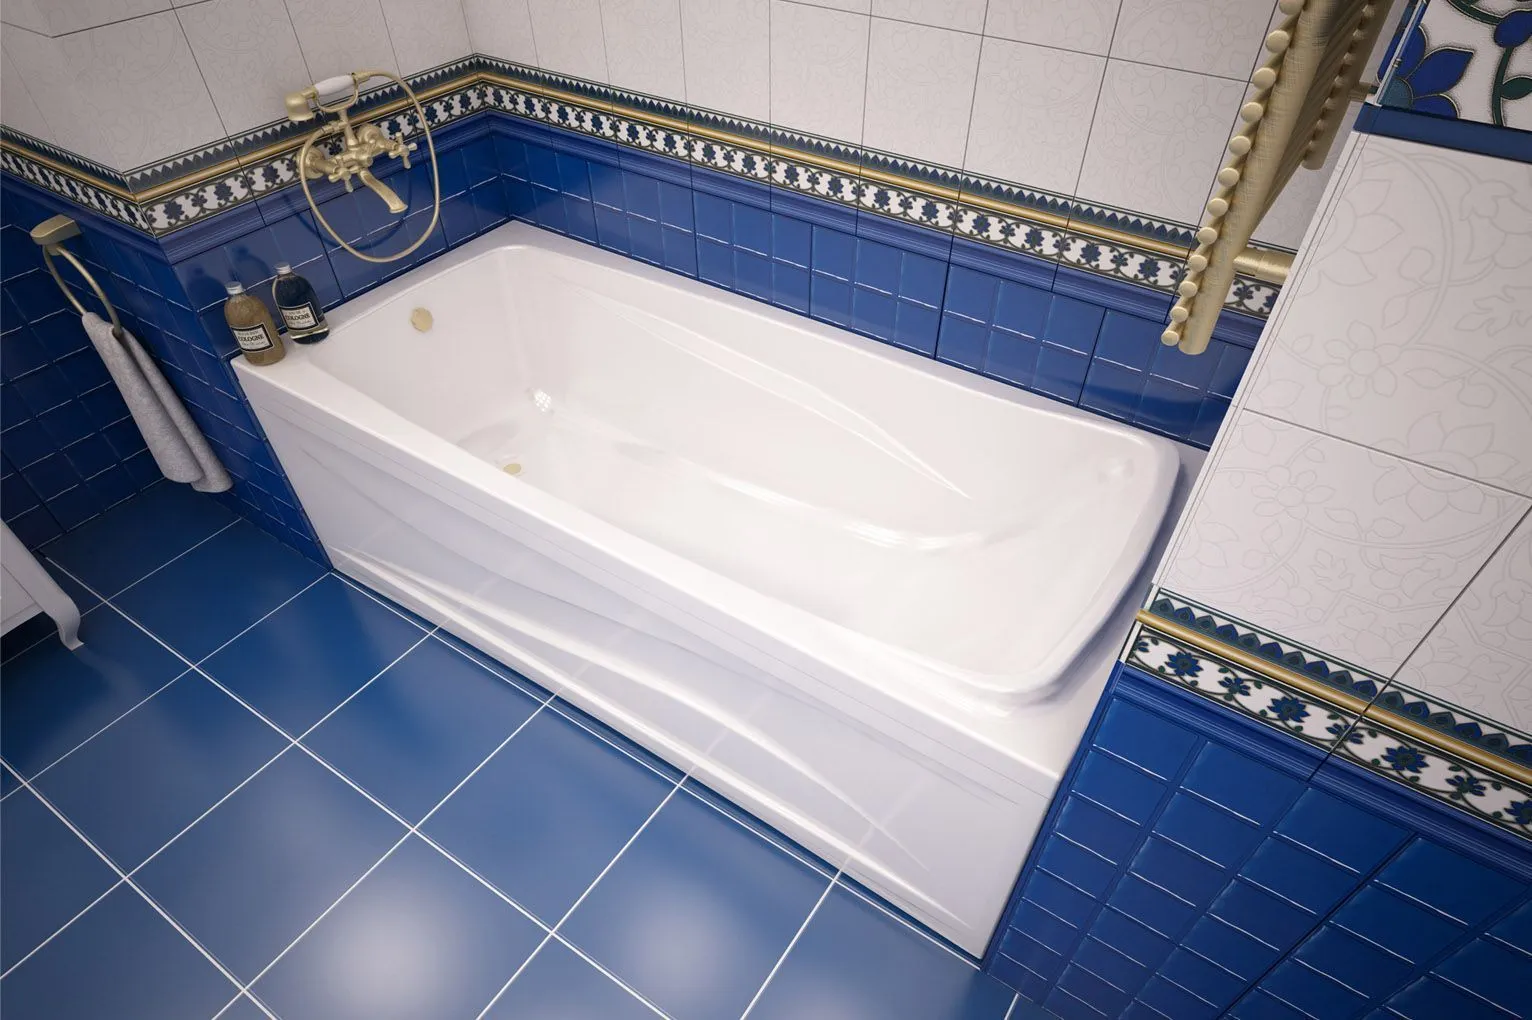 Акриловая ванна Метакам Comfort Maxi 180x80 CoM180 в интернет-магазине Sumom.kz